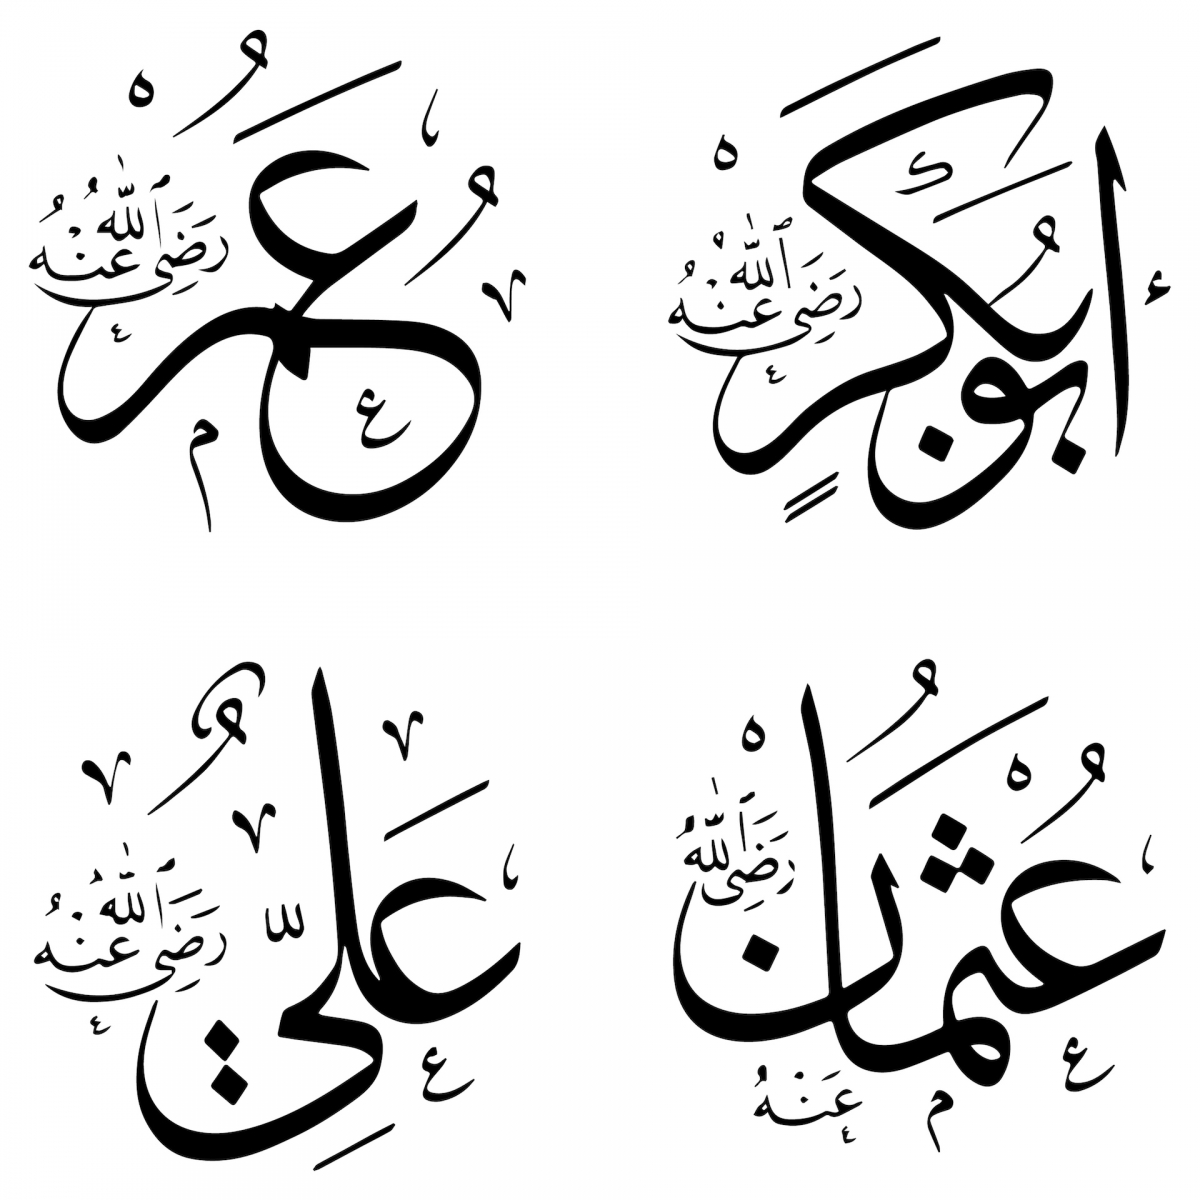 Die Namen der Rashidun-Kalifen in islamischer Inschrift.  Ebu Bekir, Omer, Osman und Ali.  4 Namensschilder der Rashidun-Kalifen schmücken alle religiösen Gebäude in der islamischen Welt